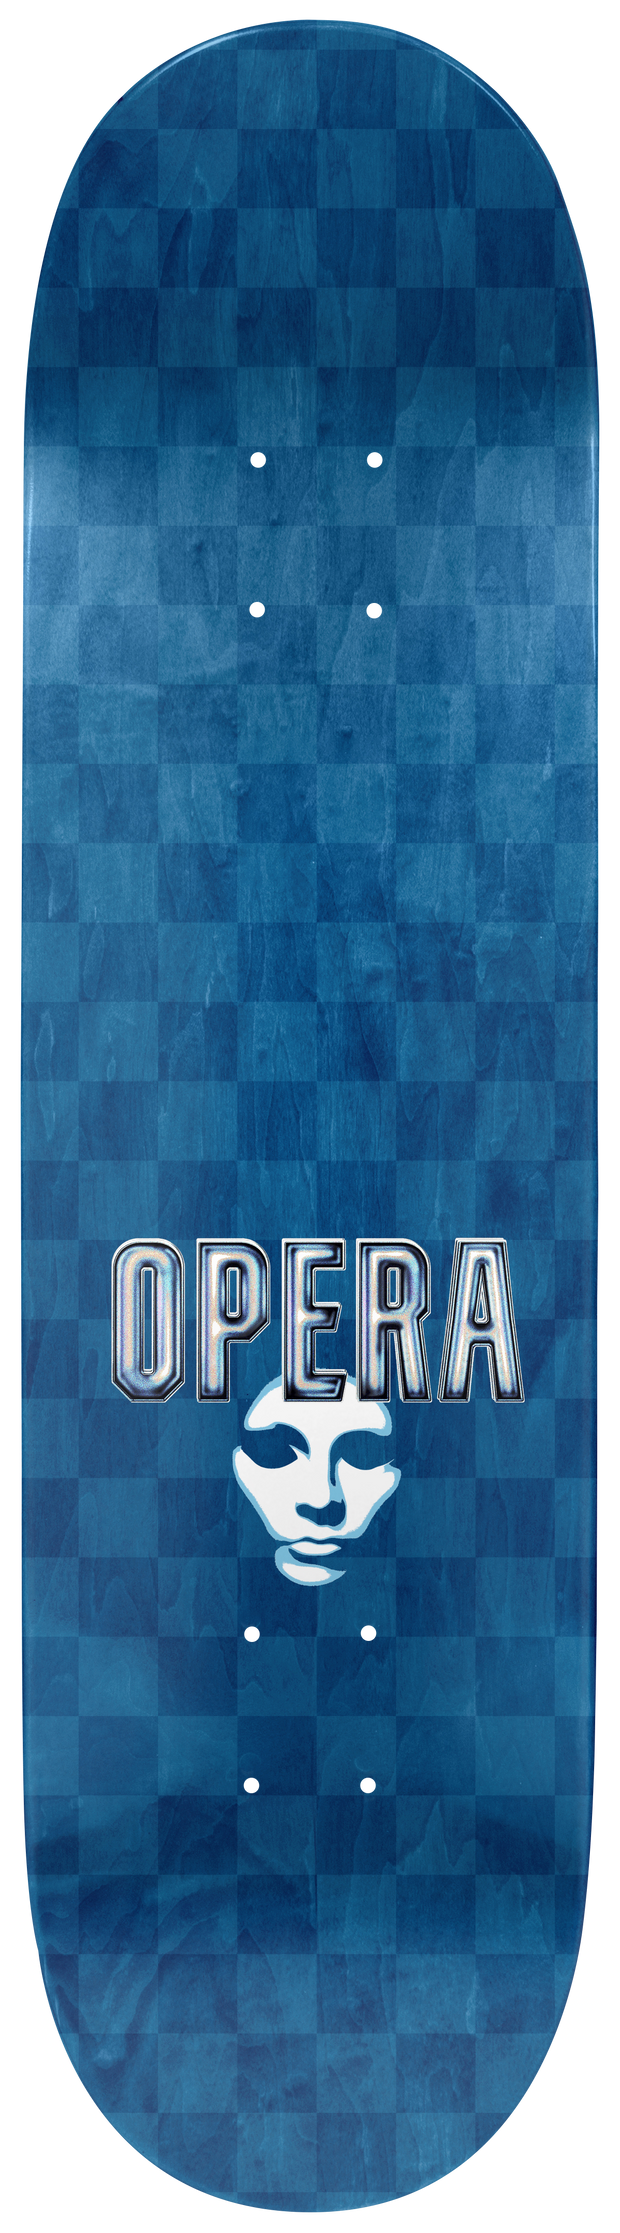 Opera   "Opera House"  8"